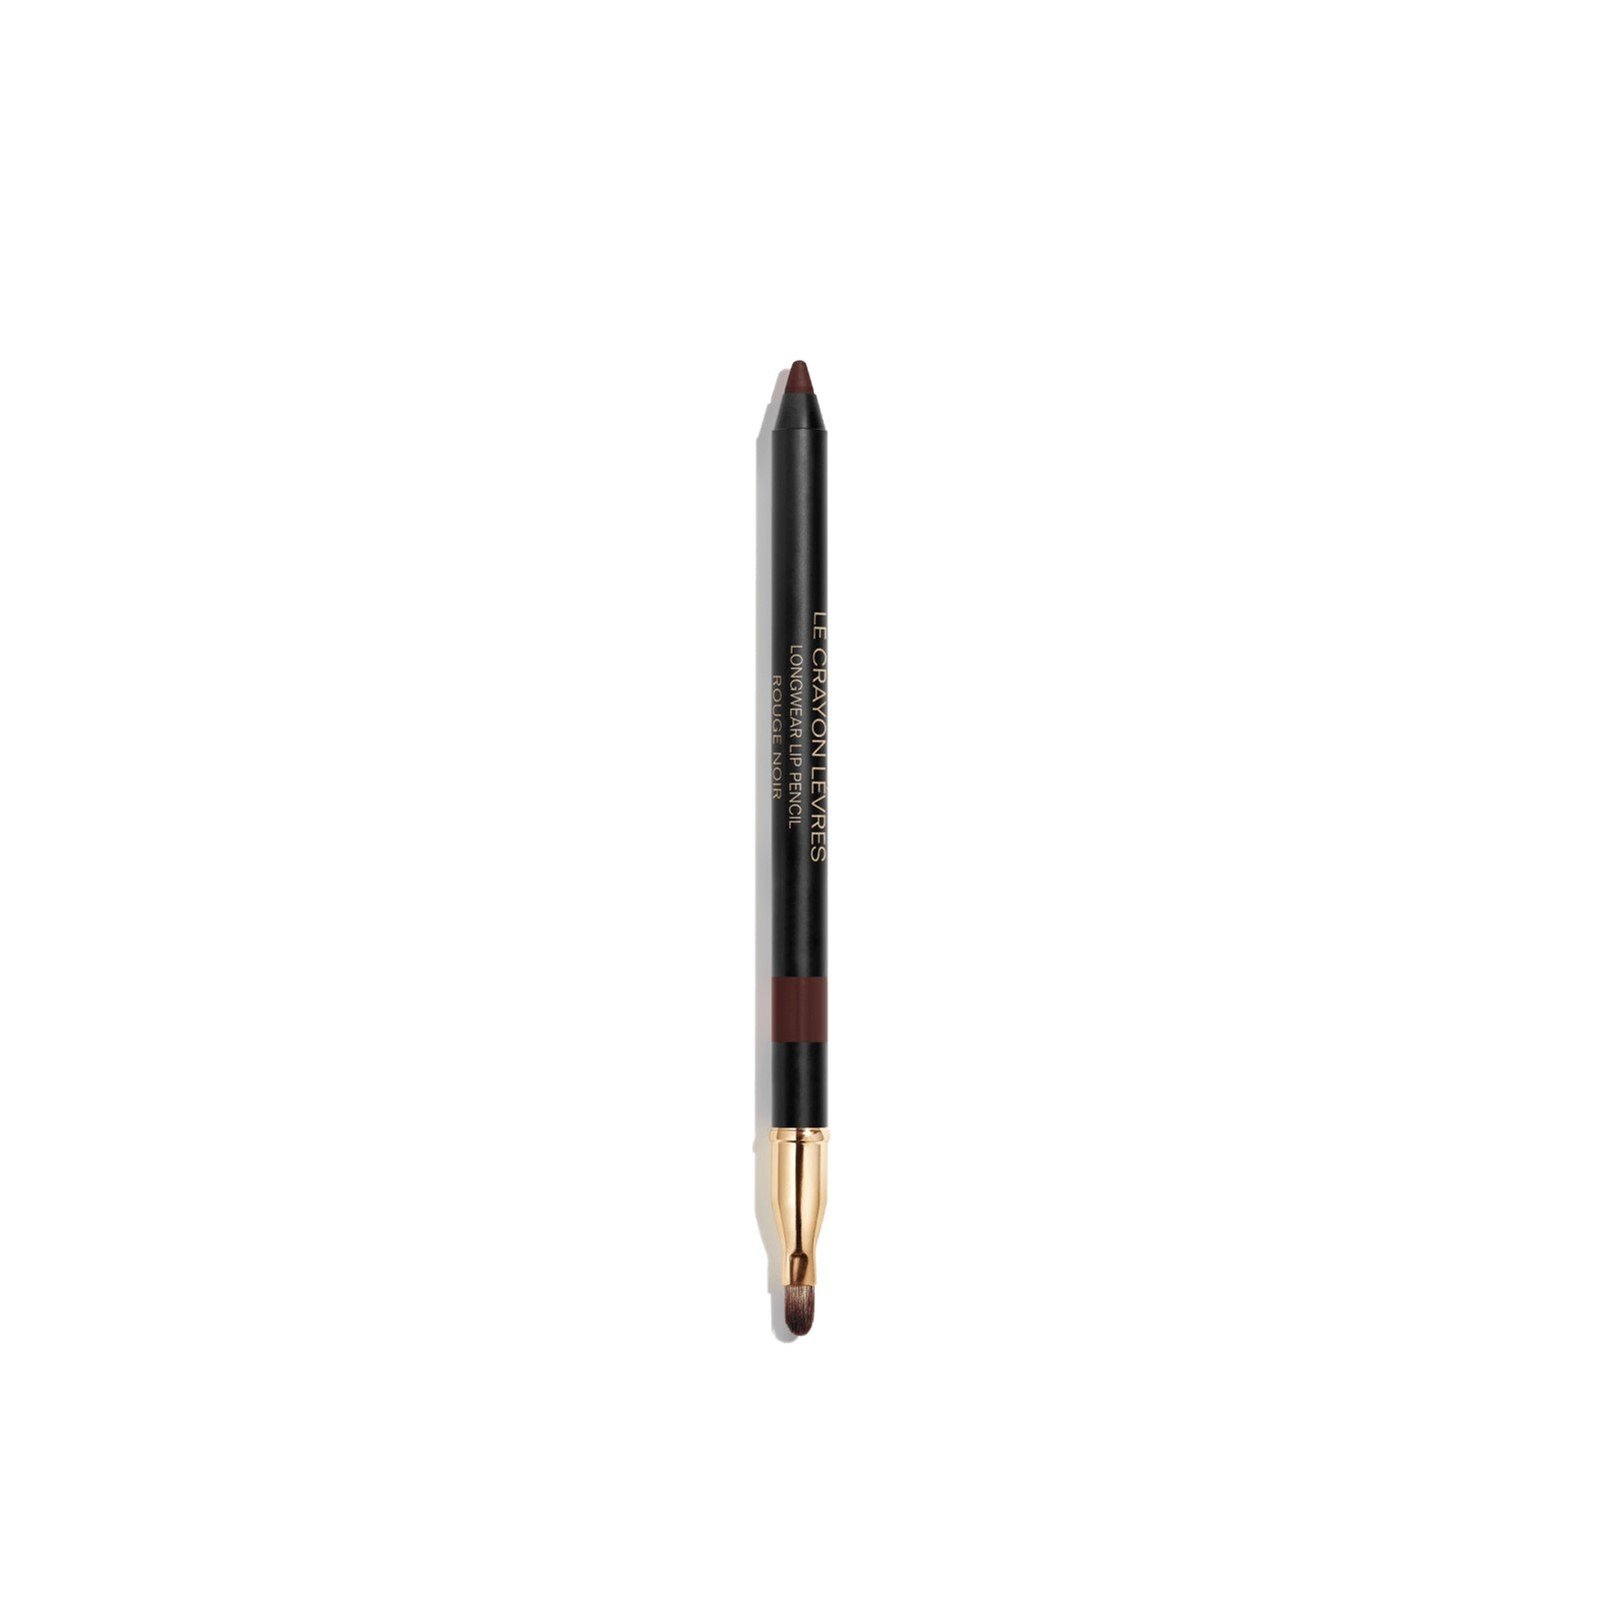 CHANEL Le Crayon Lèvres Longwear Lip Pencil 194 Rouge Noir 1.2g (0.04 oz)